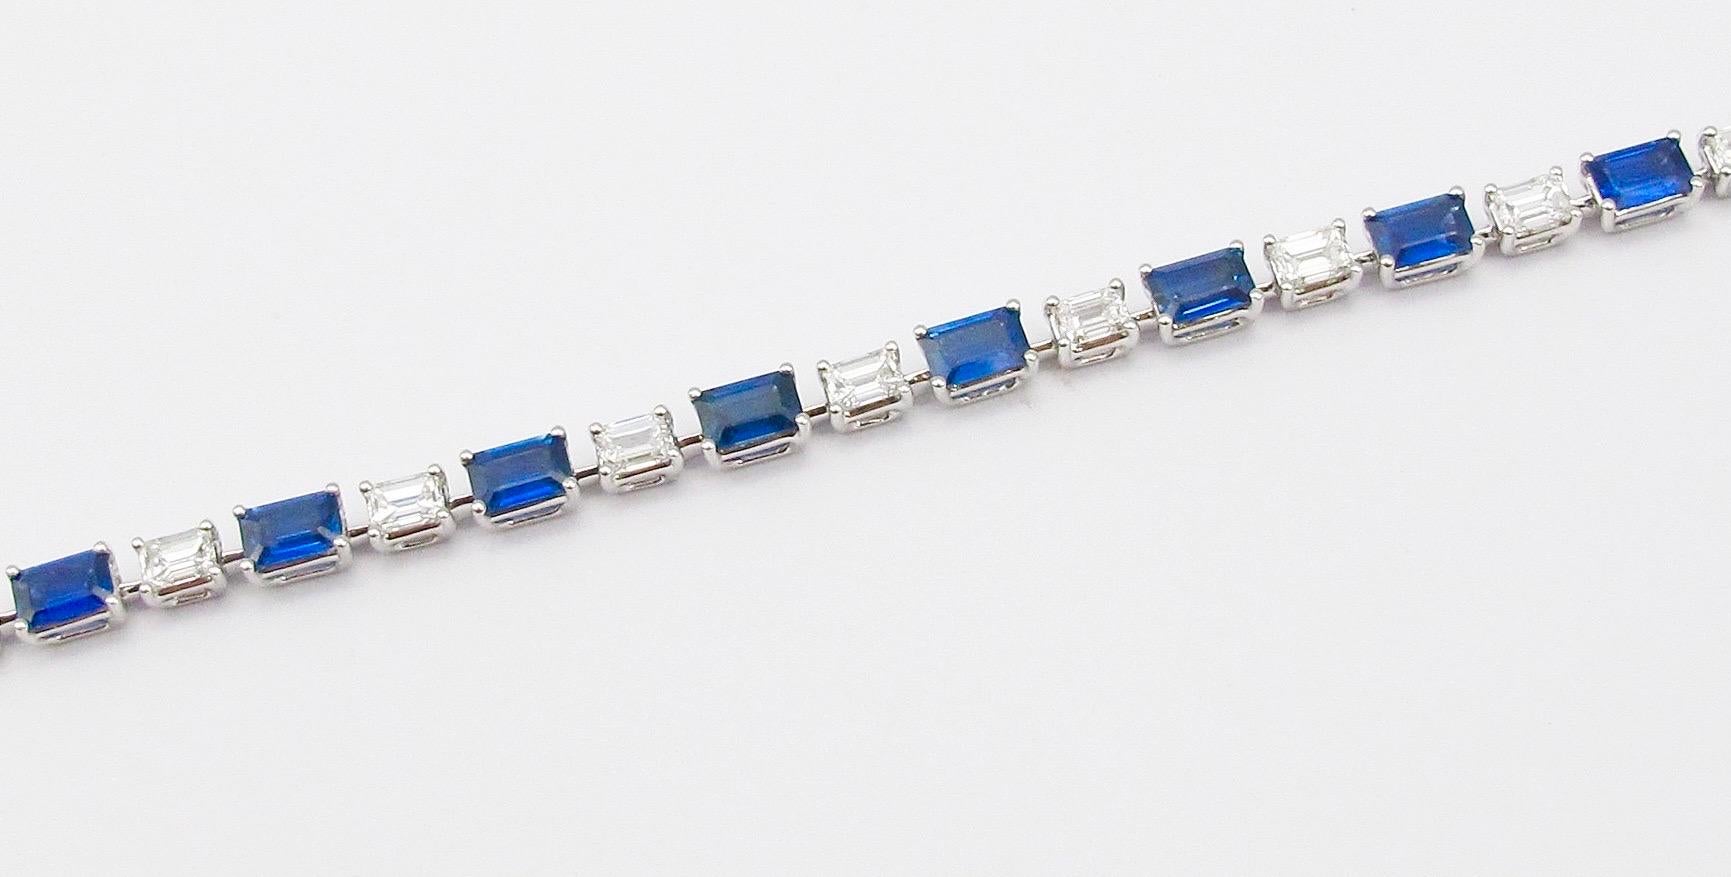 Aus dem Tresor von Emilio Jewelry in der berühmten New Yorker Fifth Avenue,
Mit Smaragdschliff königsblauen sauberen Saphiren alle zusammen, entlang D-F Farbe Vs1-Vs2 Diamanten gesetzt. 
Gewicht des Diamanten: 3,81 Karat
Saphir Gewicht: 7,93